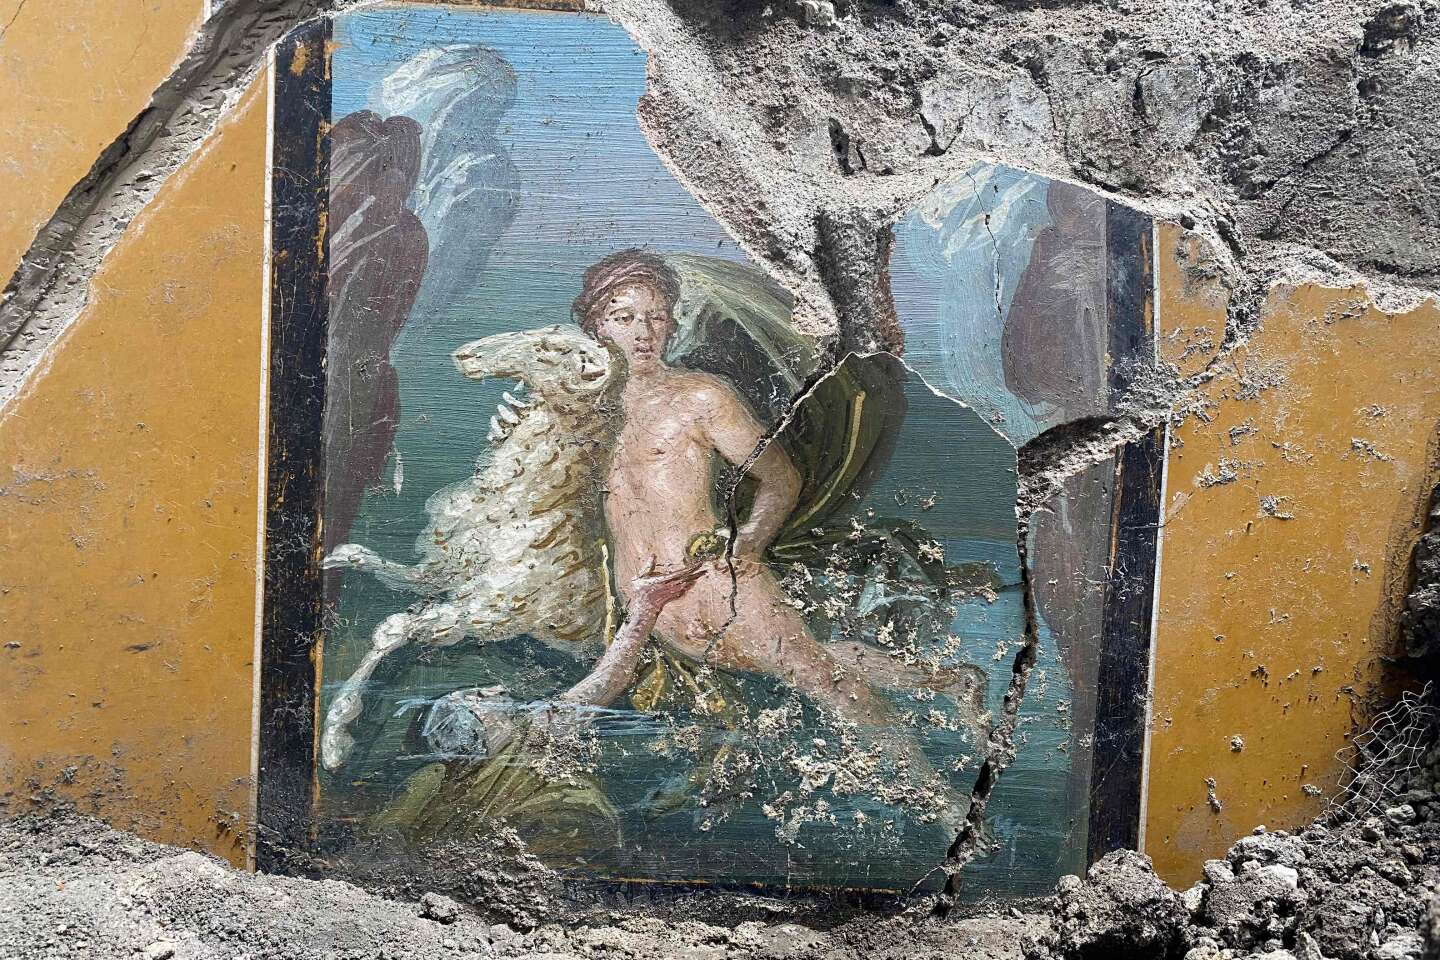 Pompéi : de splendides fresques découvertes lors de travaux de restauration et de fouilles